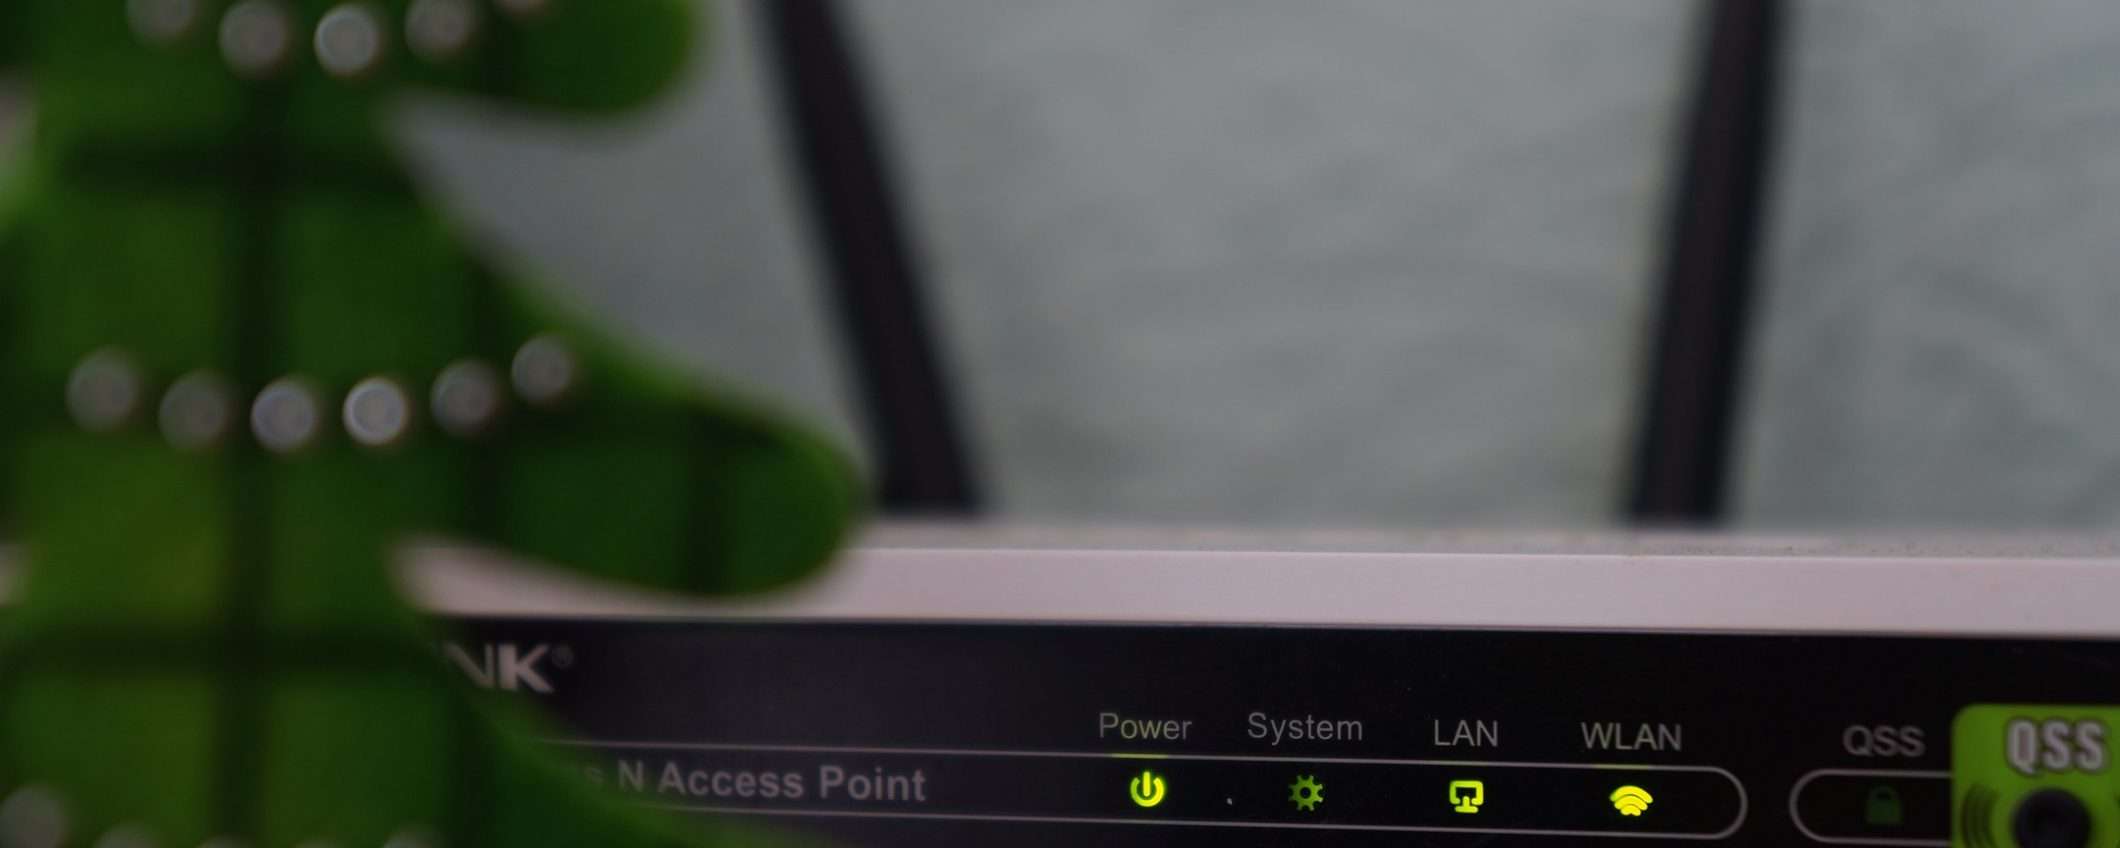 Wi-Fi 6, nuovo standard per router migliori e più veloci